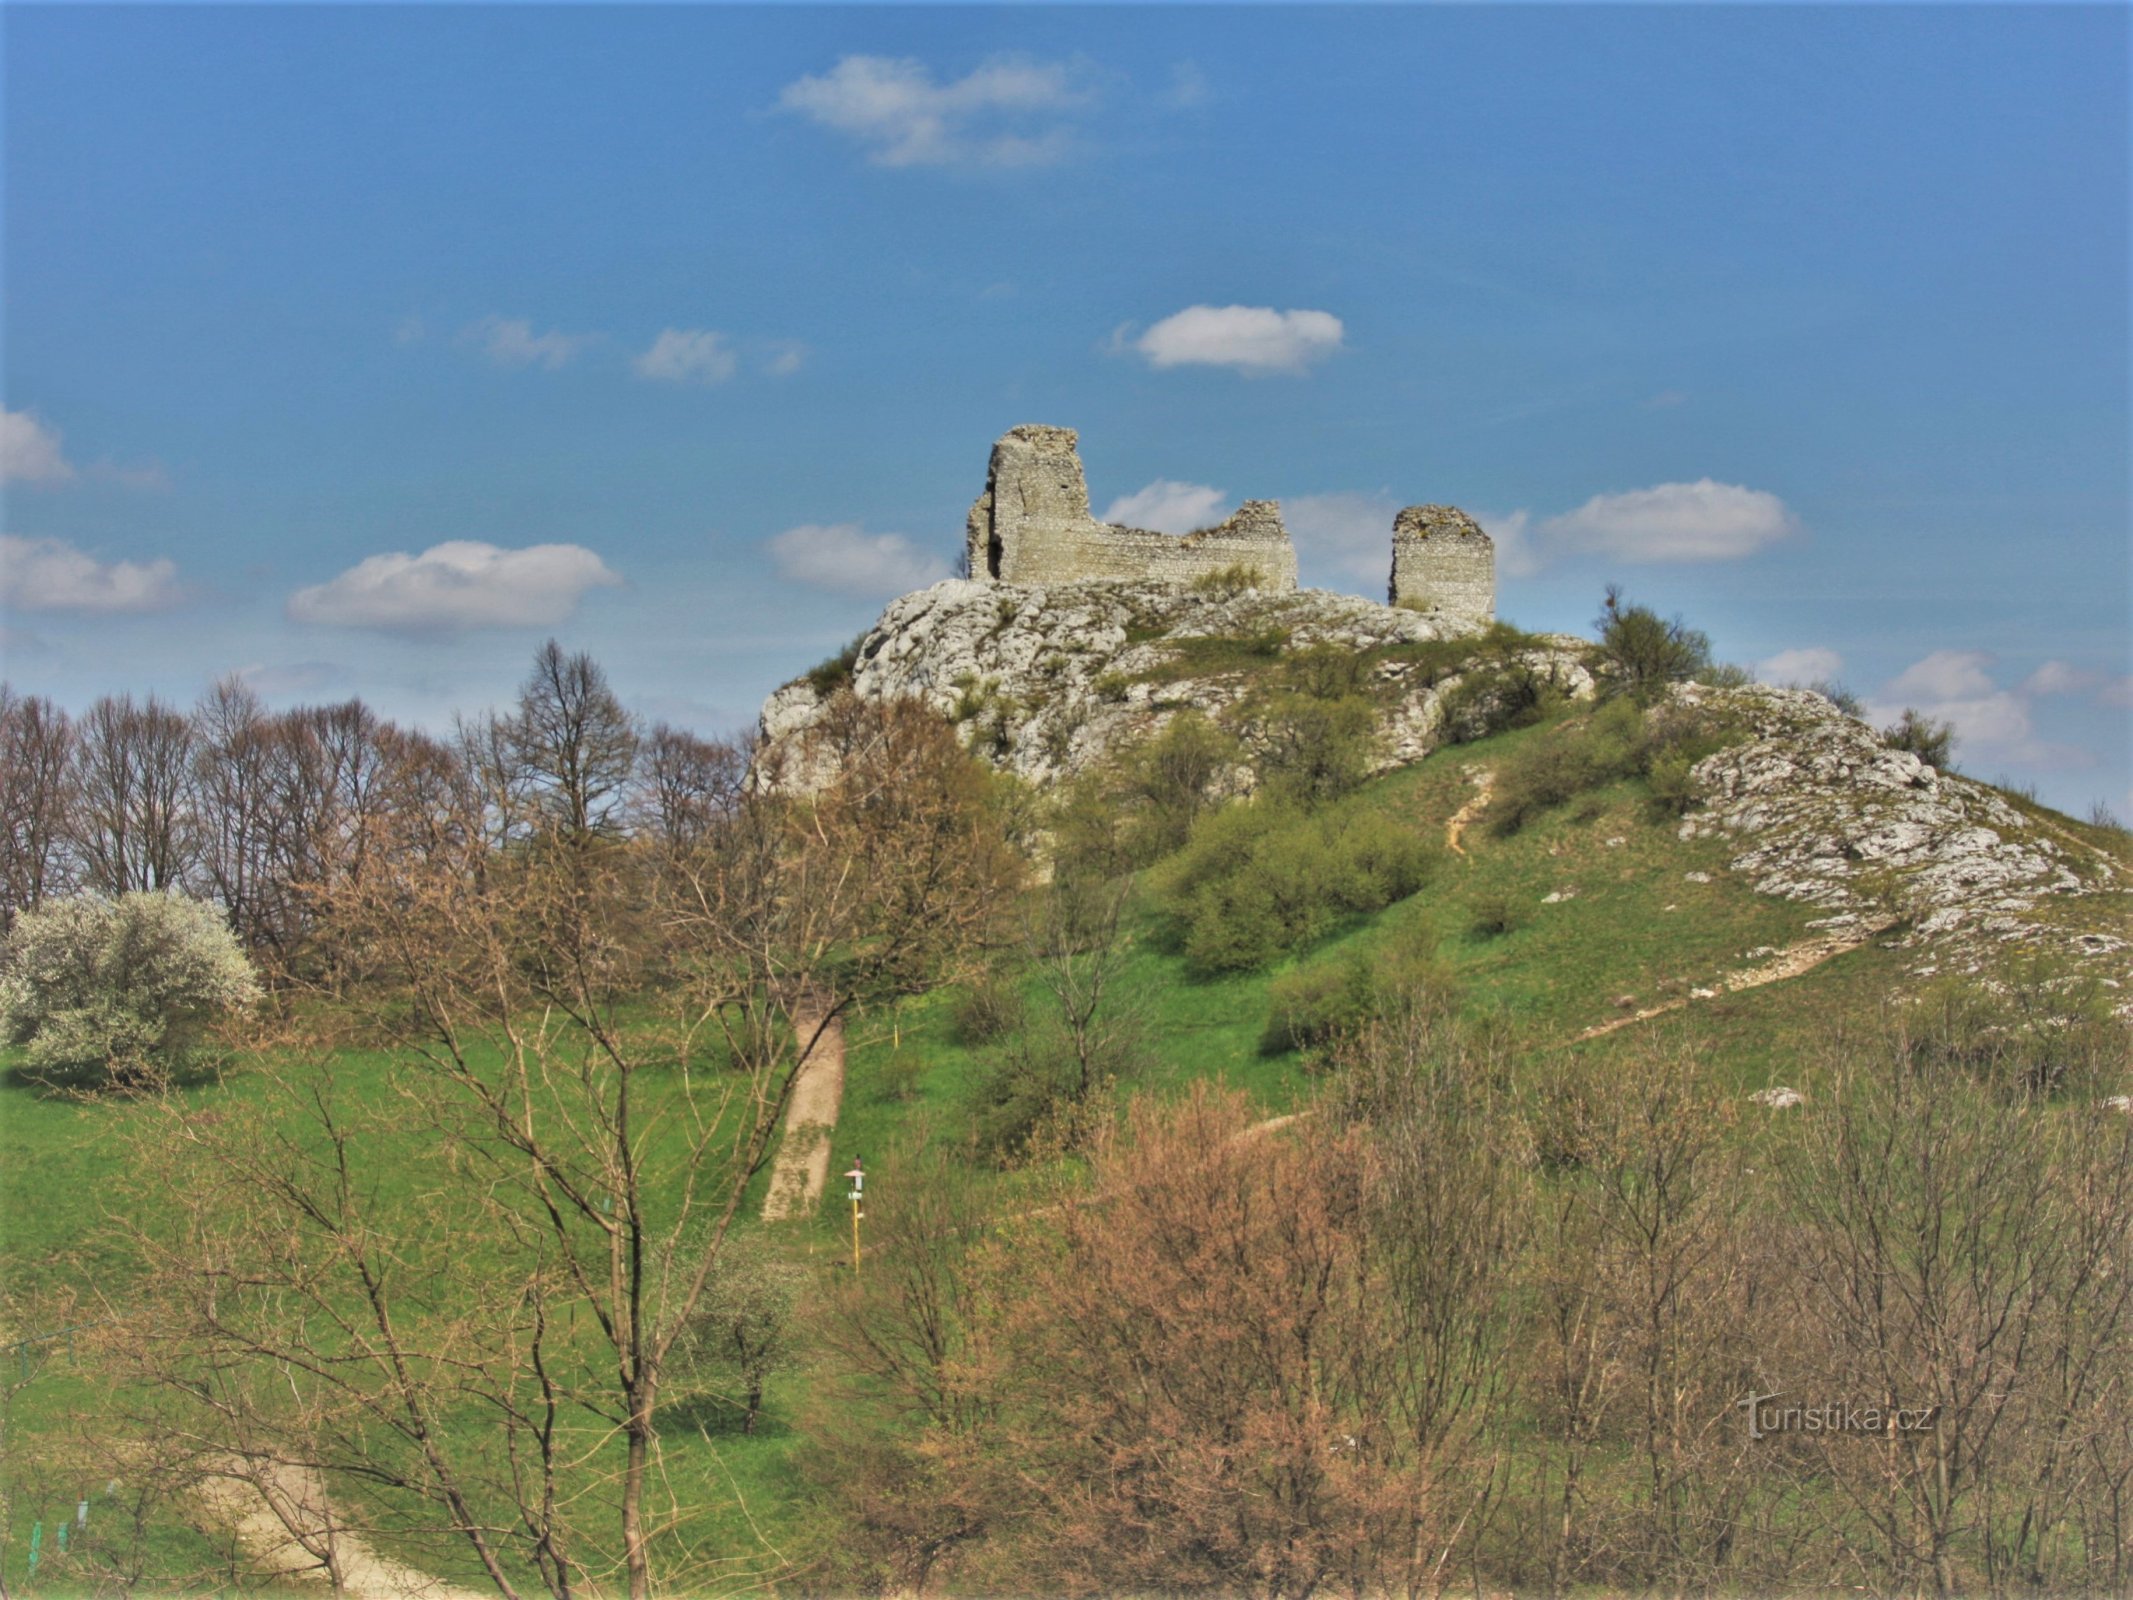 帕拉瓦的孤儿城堡